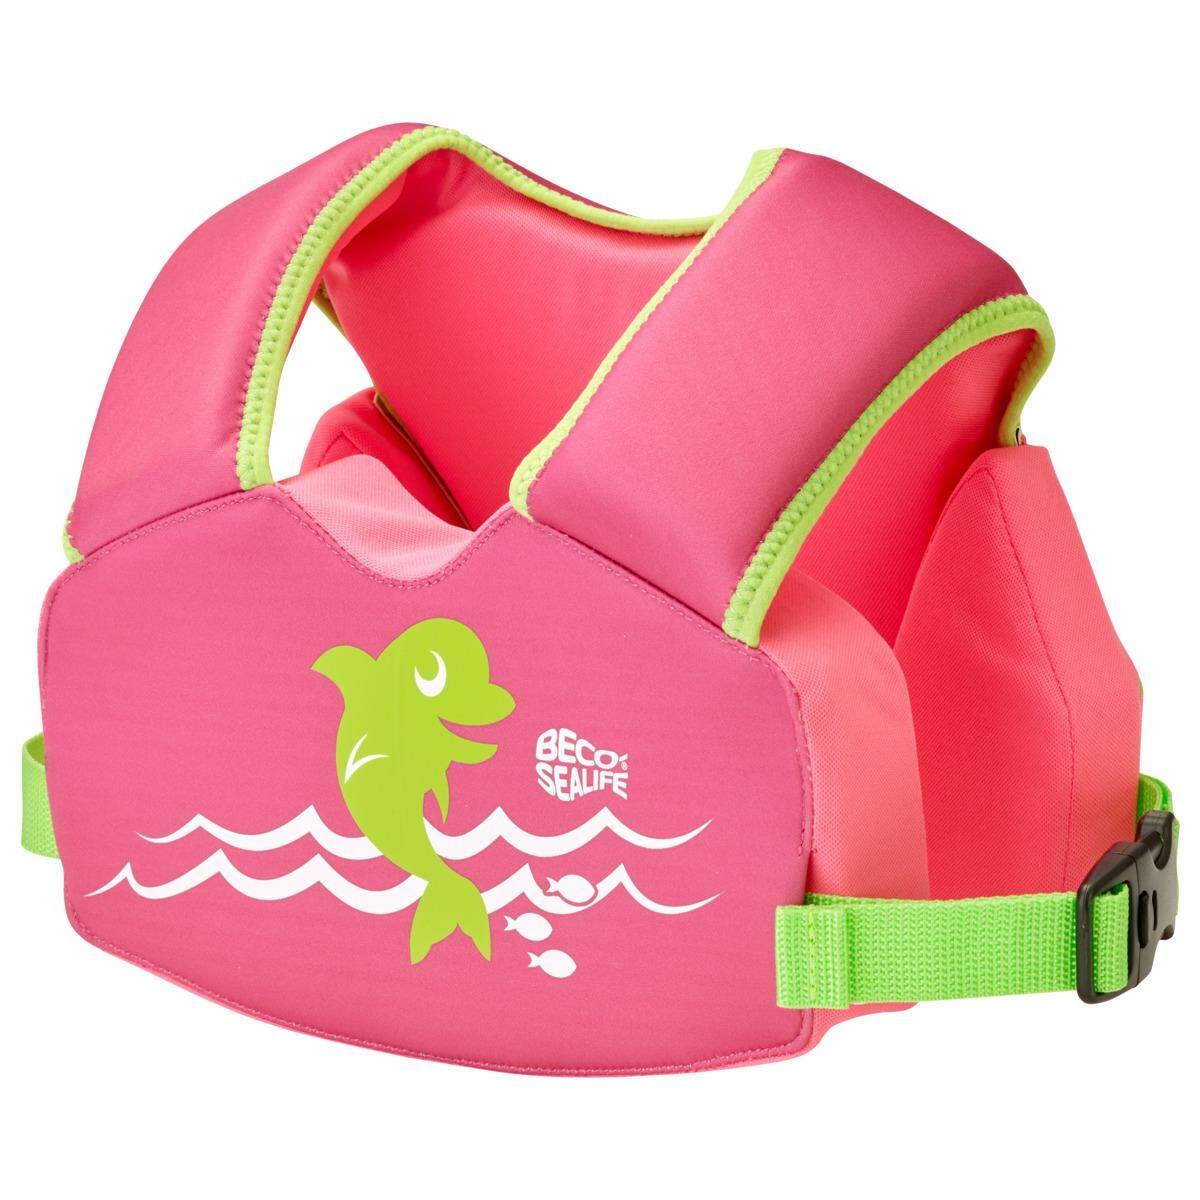 Beco Sealife Schwimmlernweste pink 2-6 Jahre